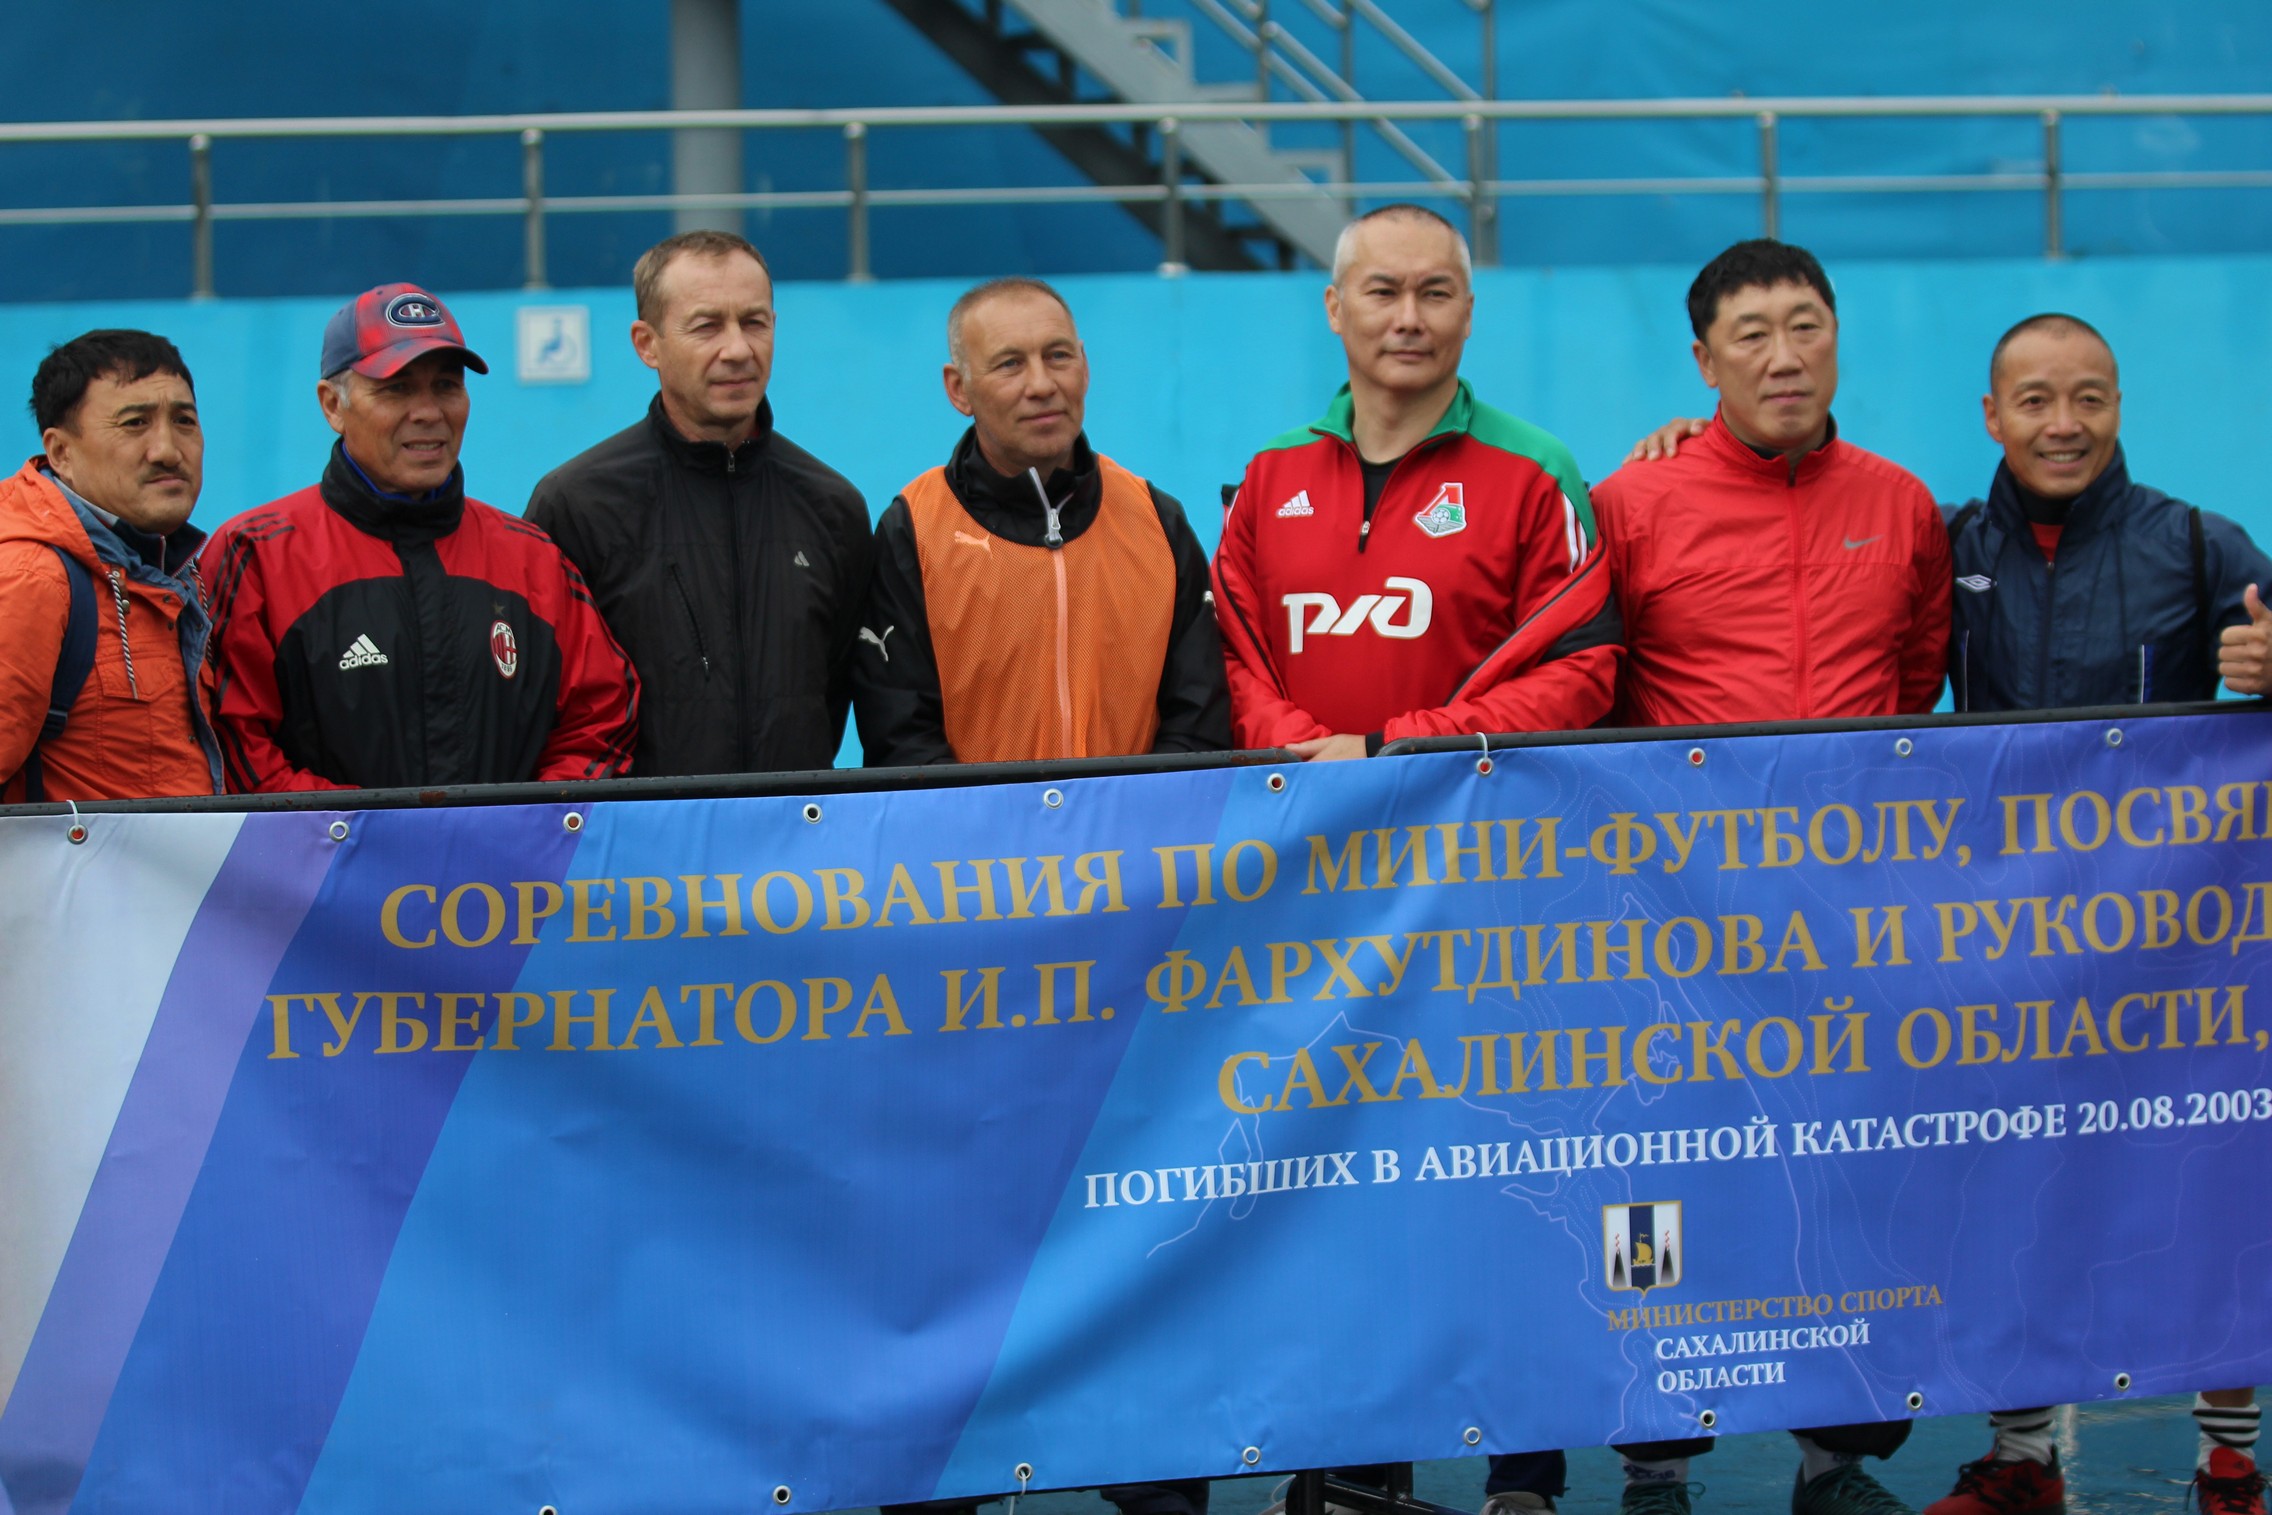 Турнир ветеранов памяти И.П. Фархутдинова